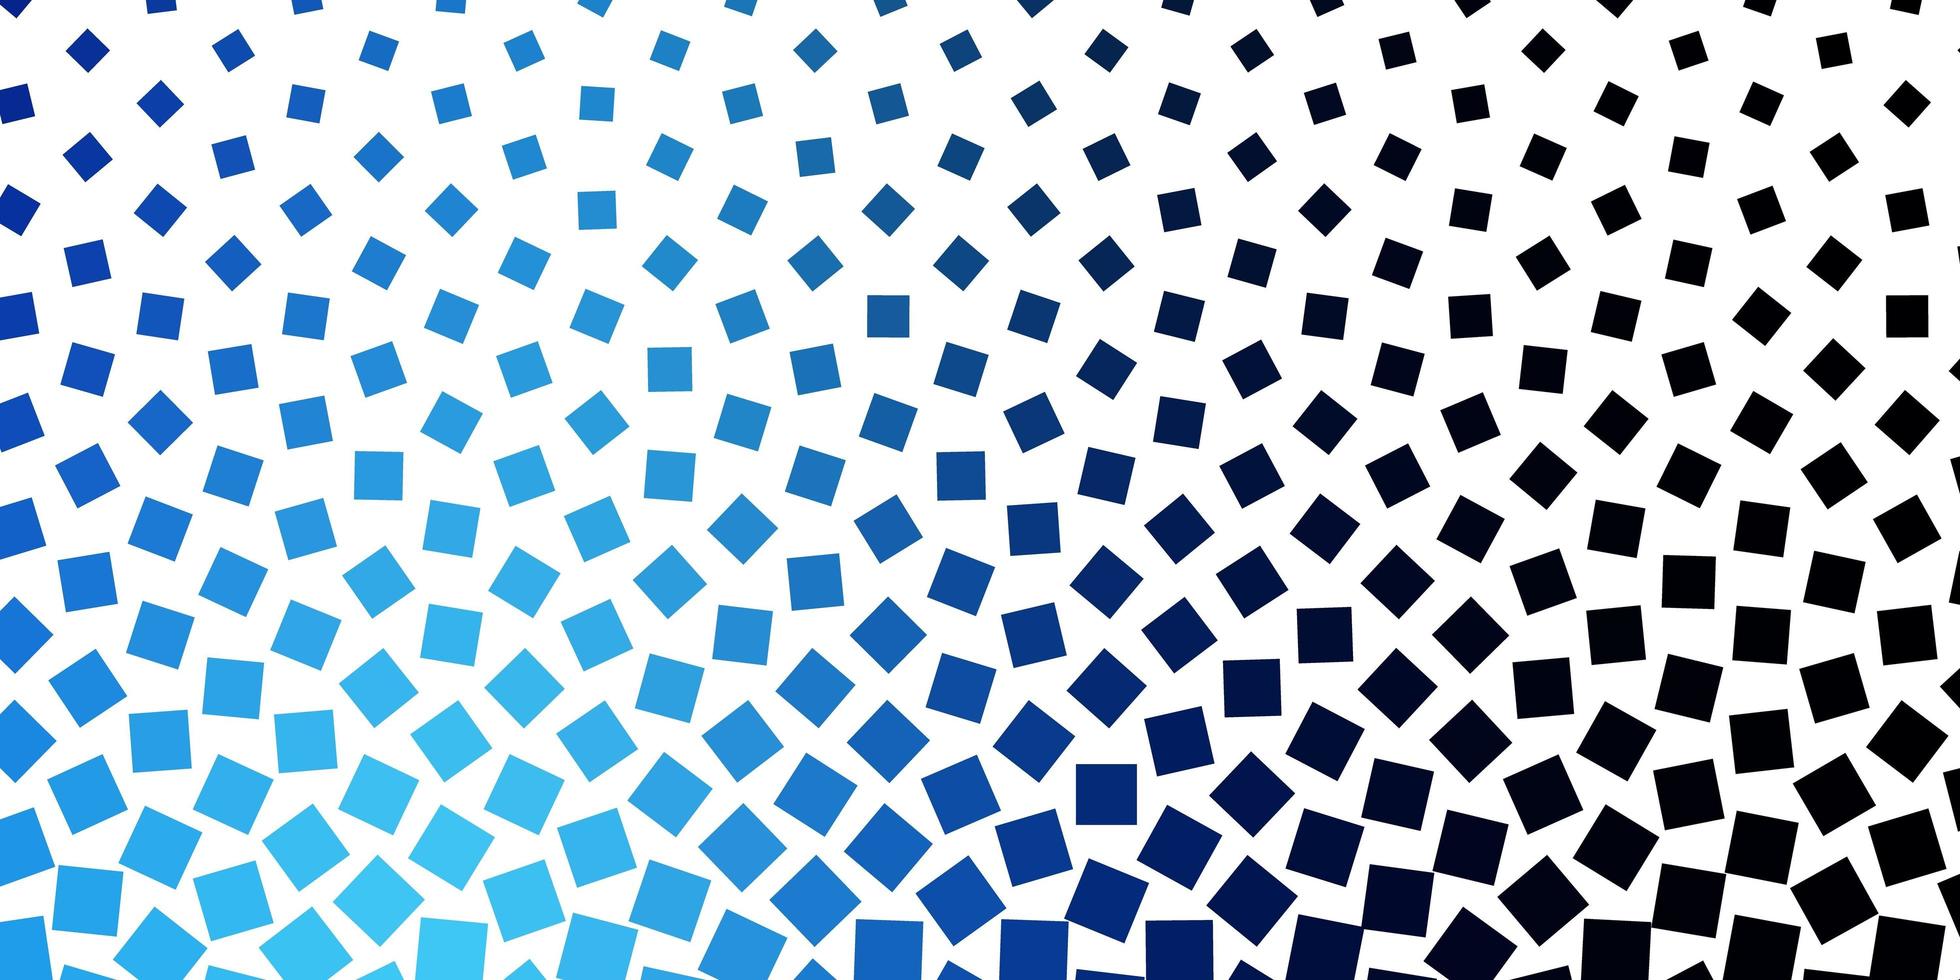 sfondo vettoriale blu scuro in stile poligonale